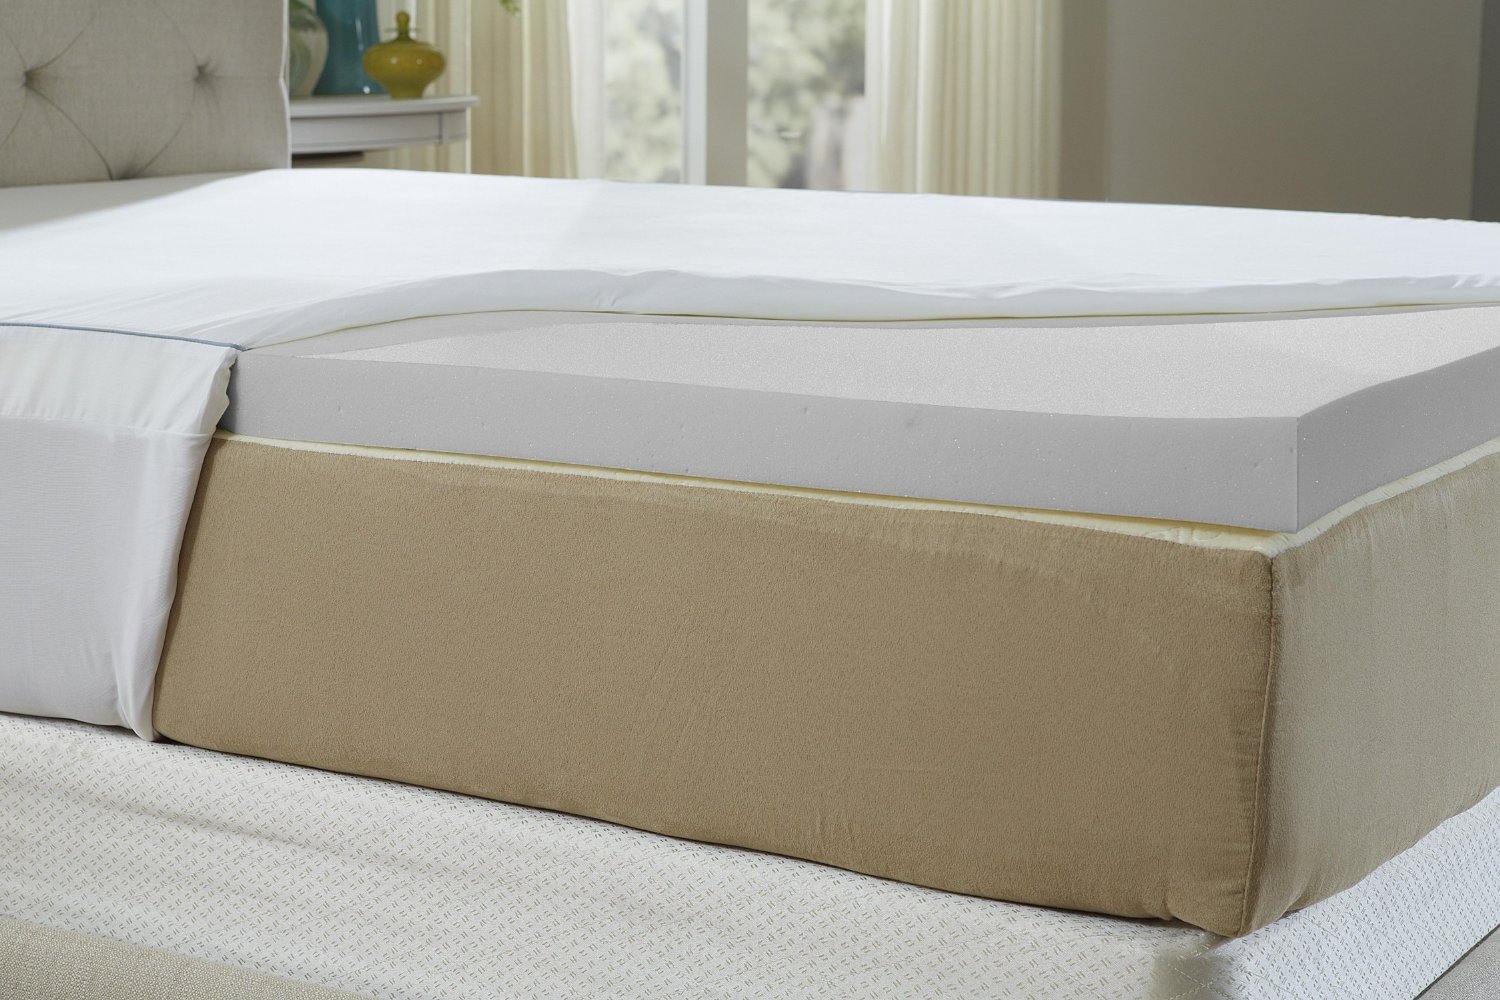 4 pound density mattress topper